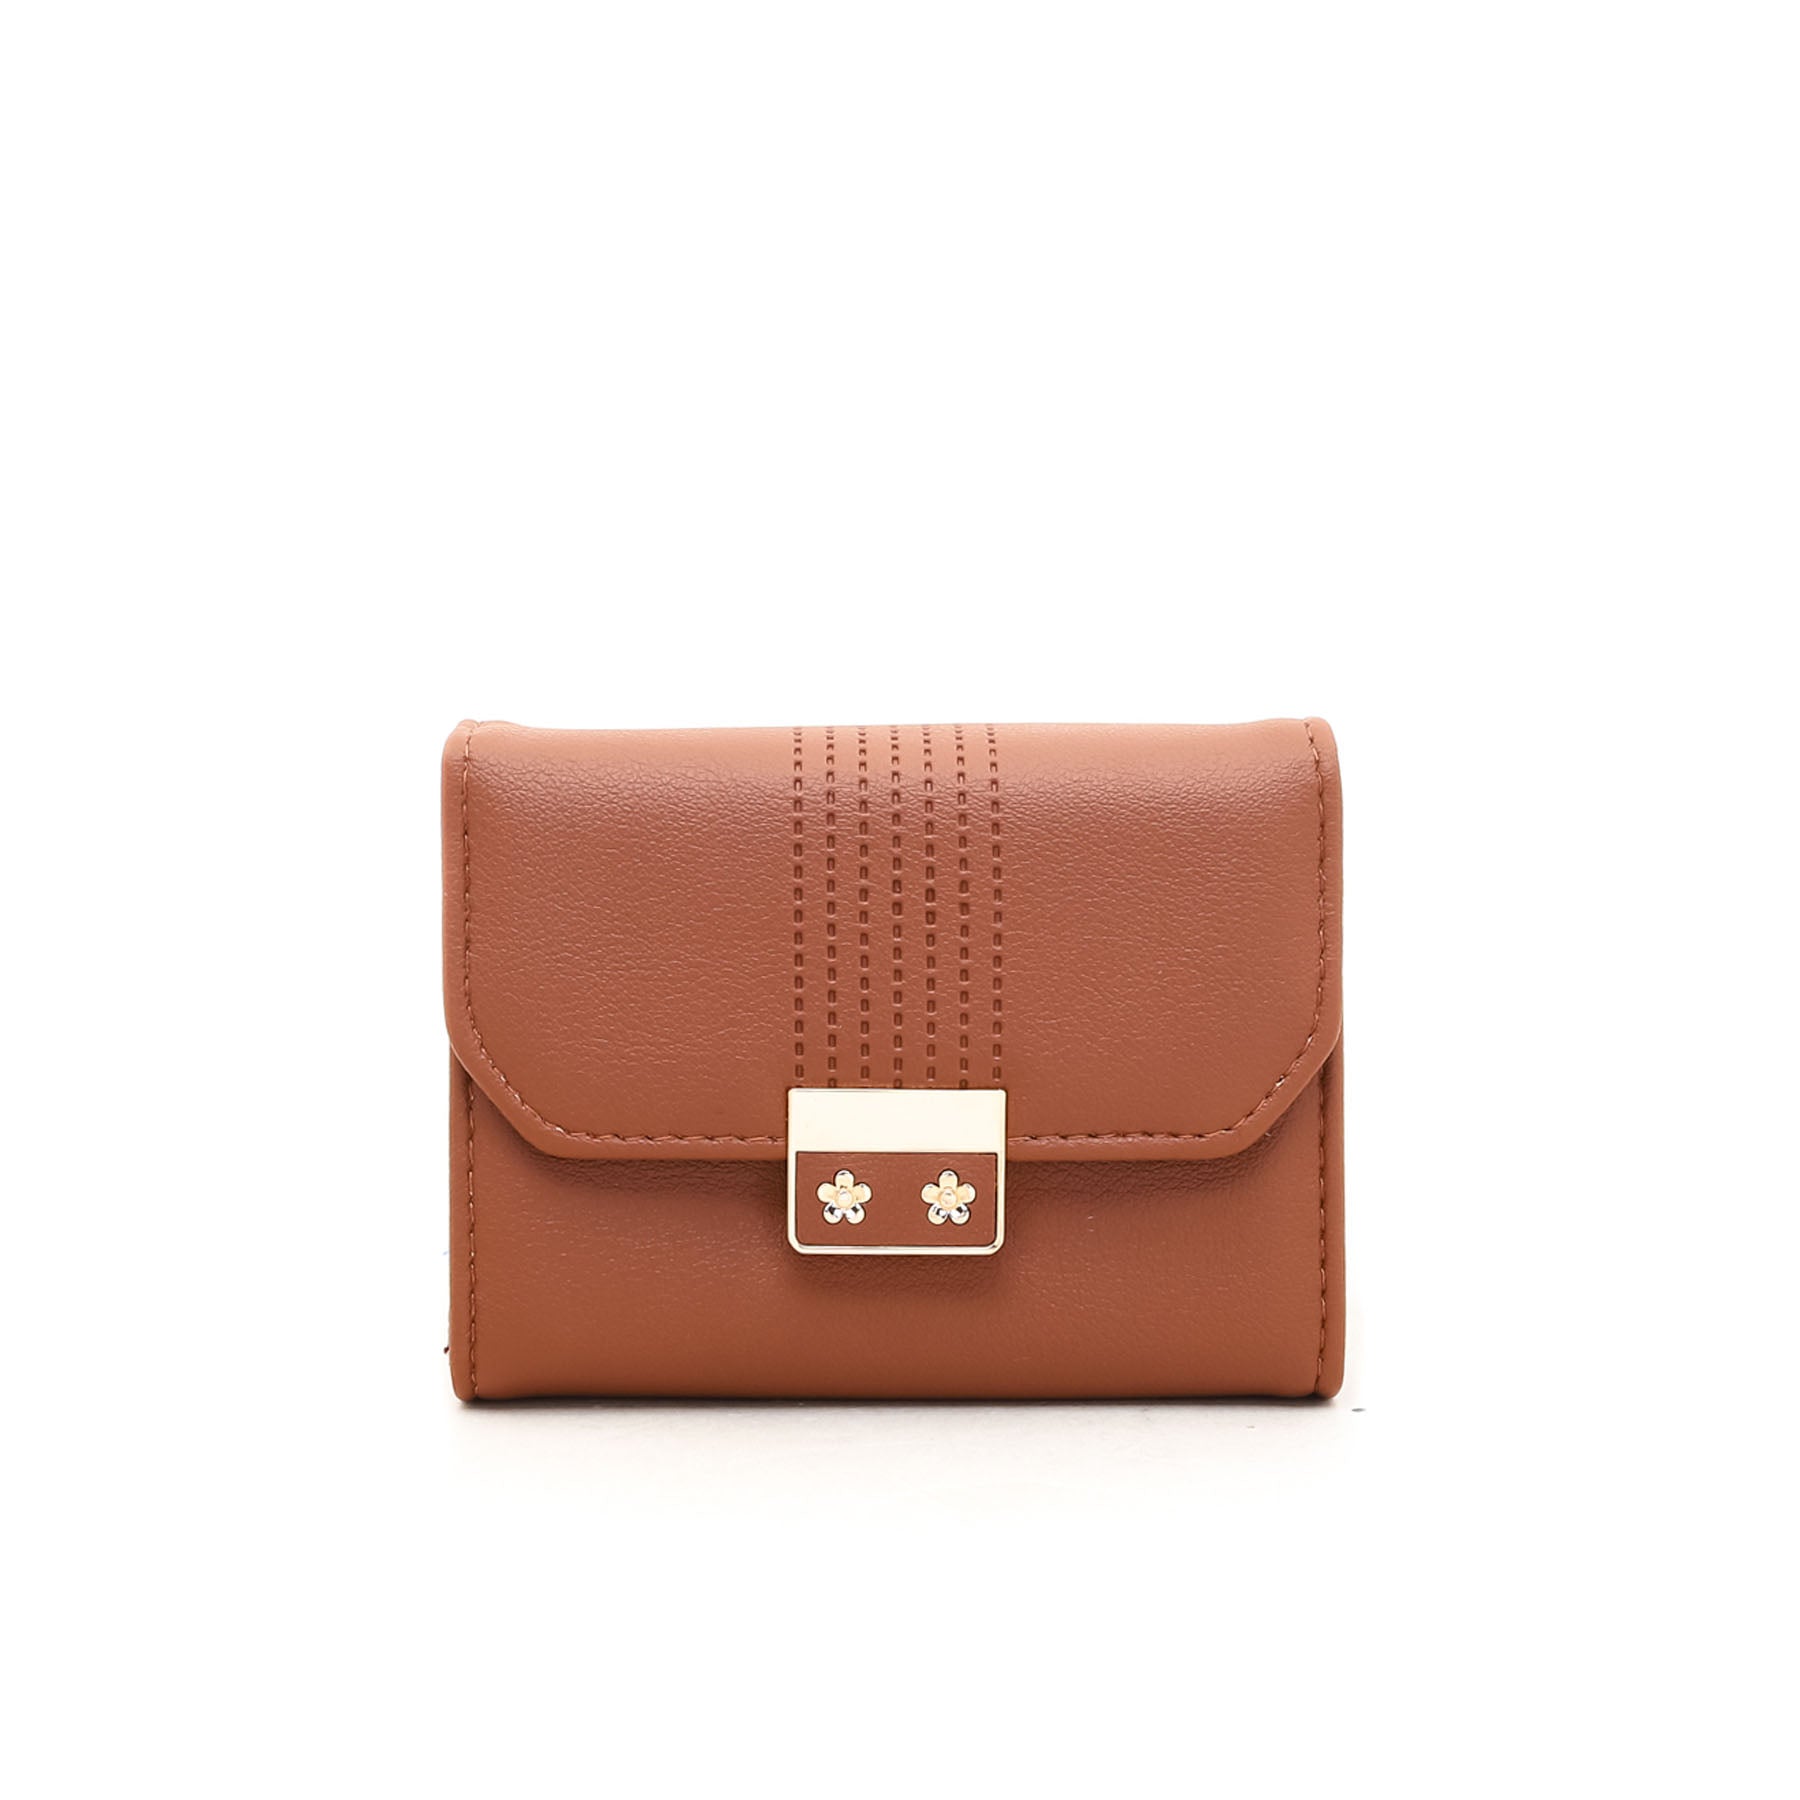 Brown Formal Wallet P70702